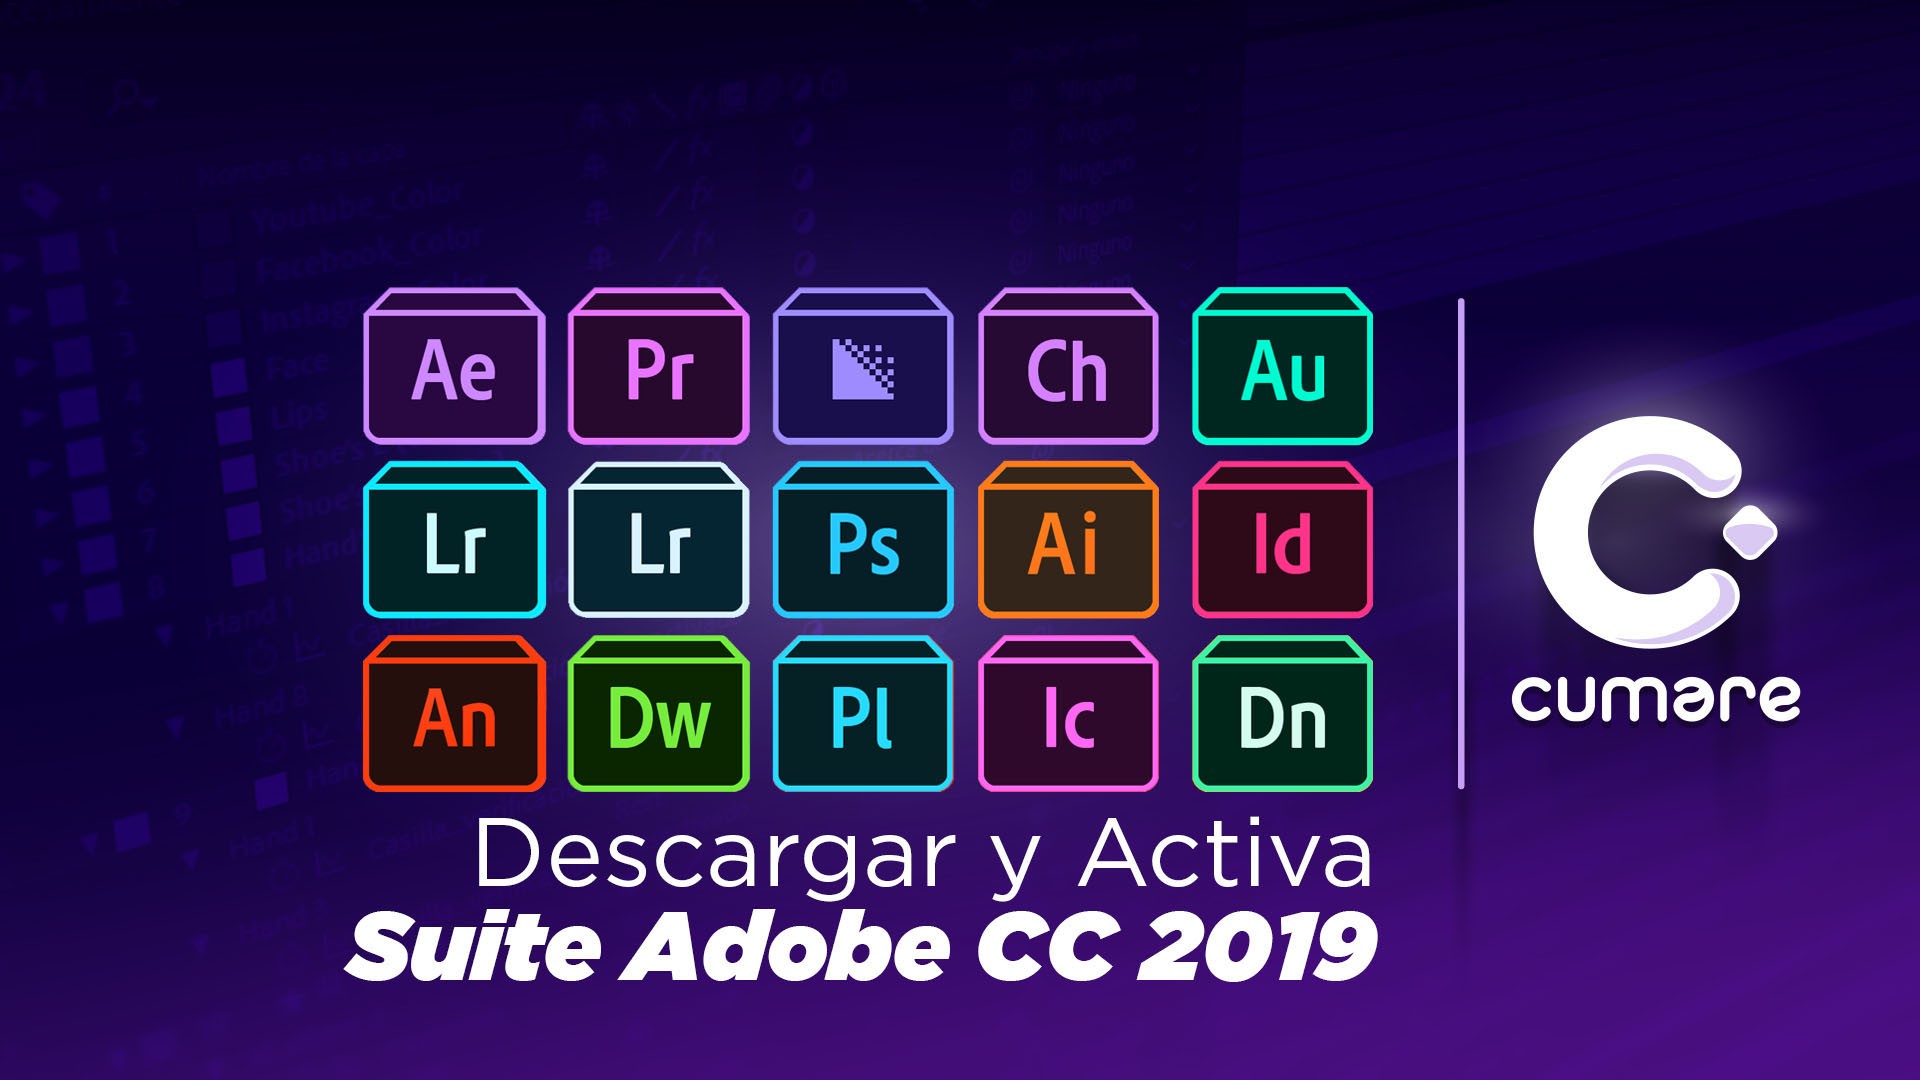 Adobe cc cleaner tool mac